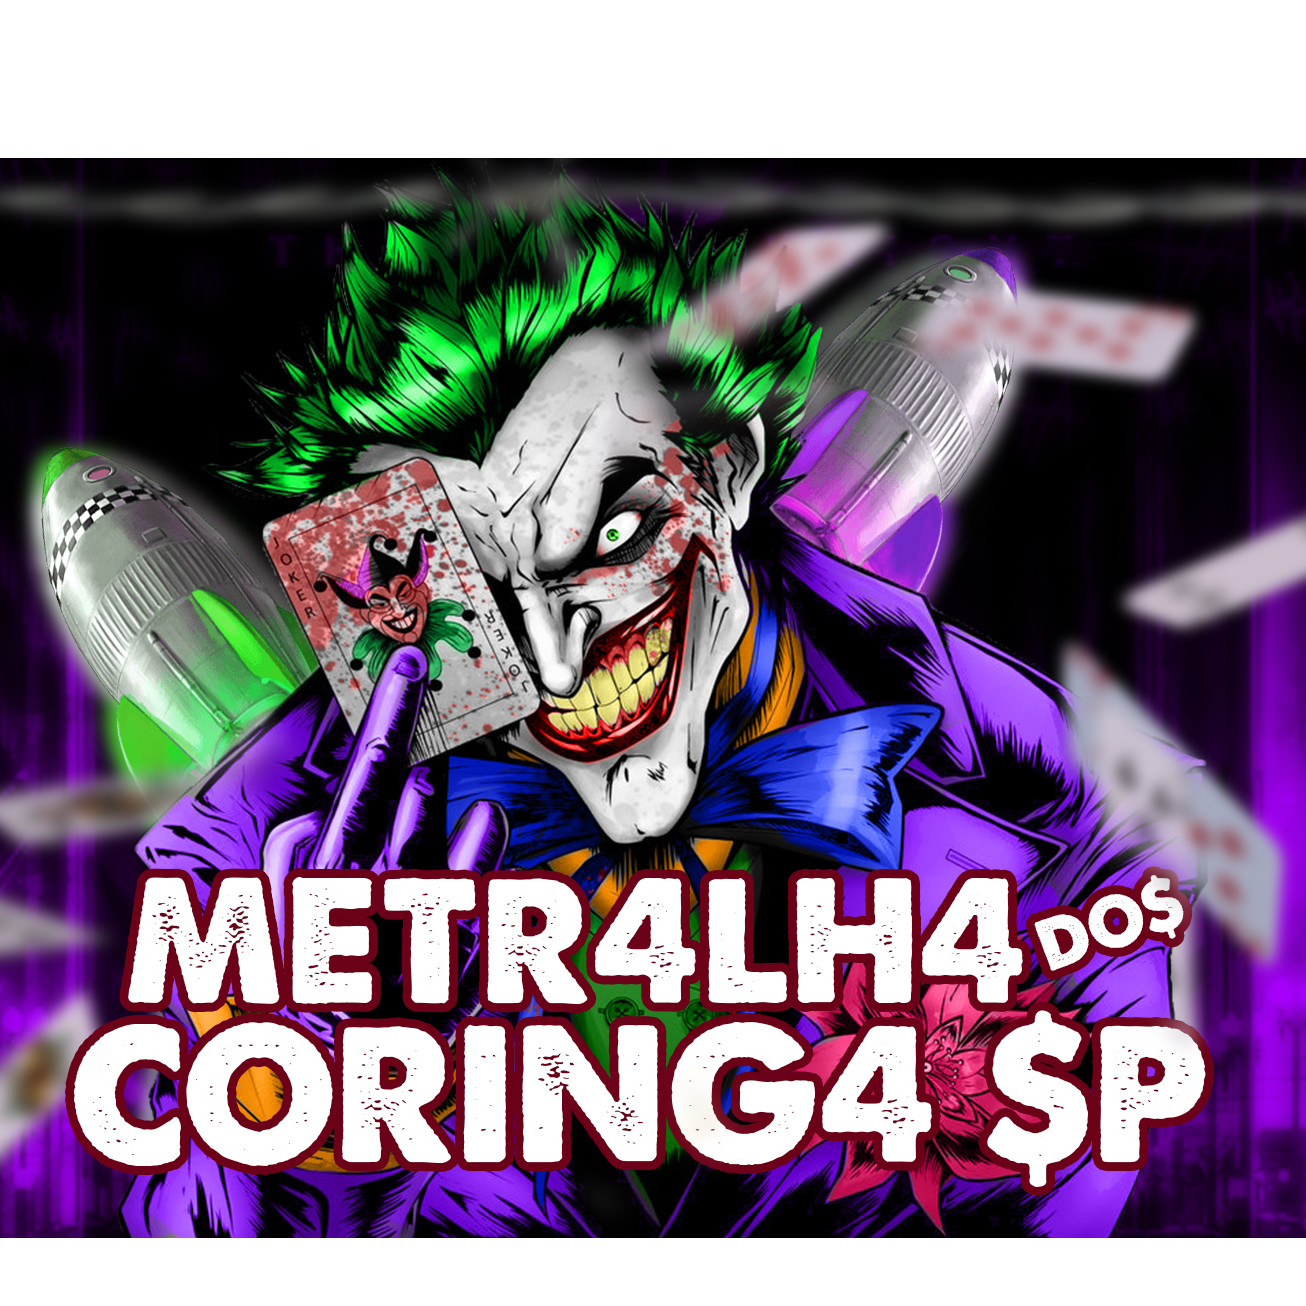 METRALHA DO$ CORING4 $P (@metralhadoscoringa)